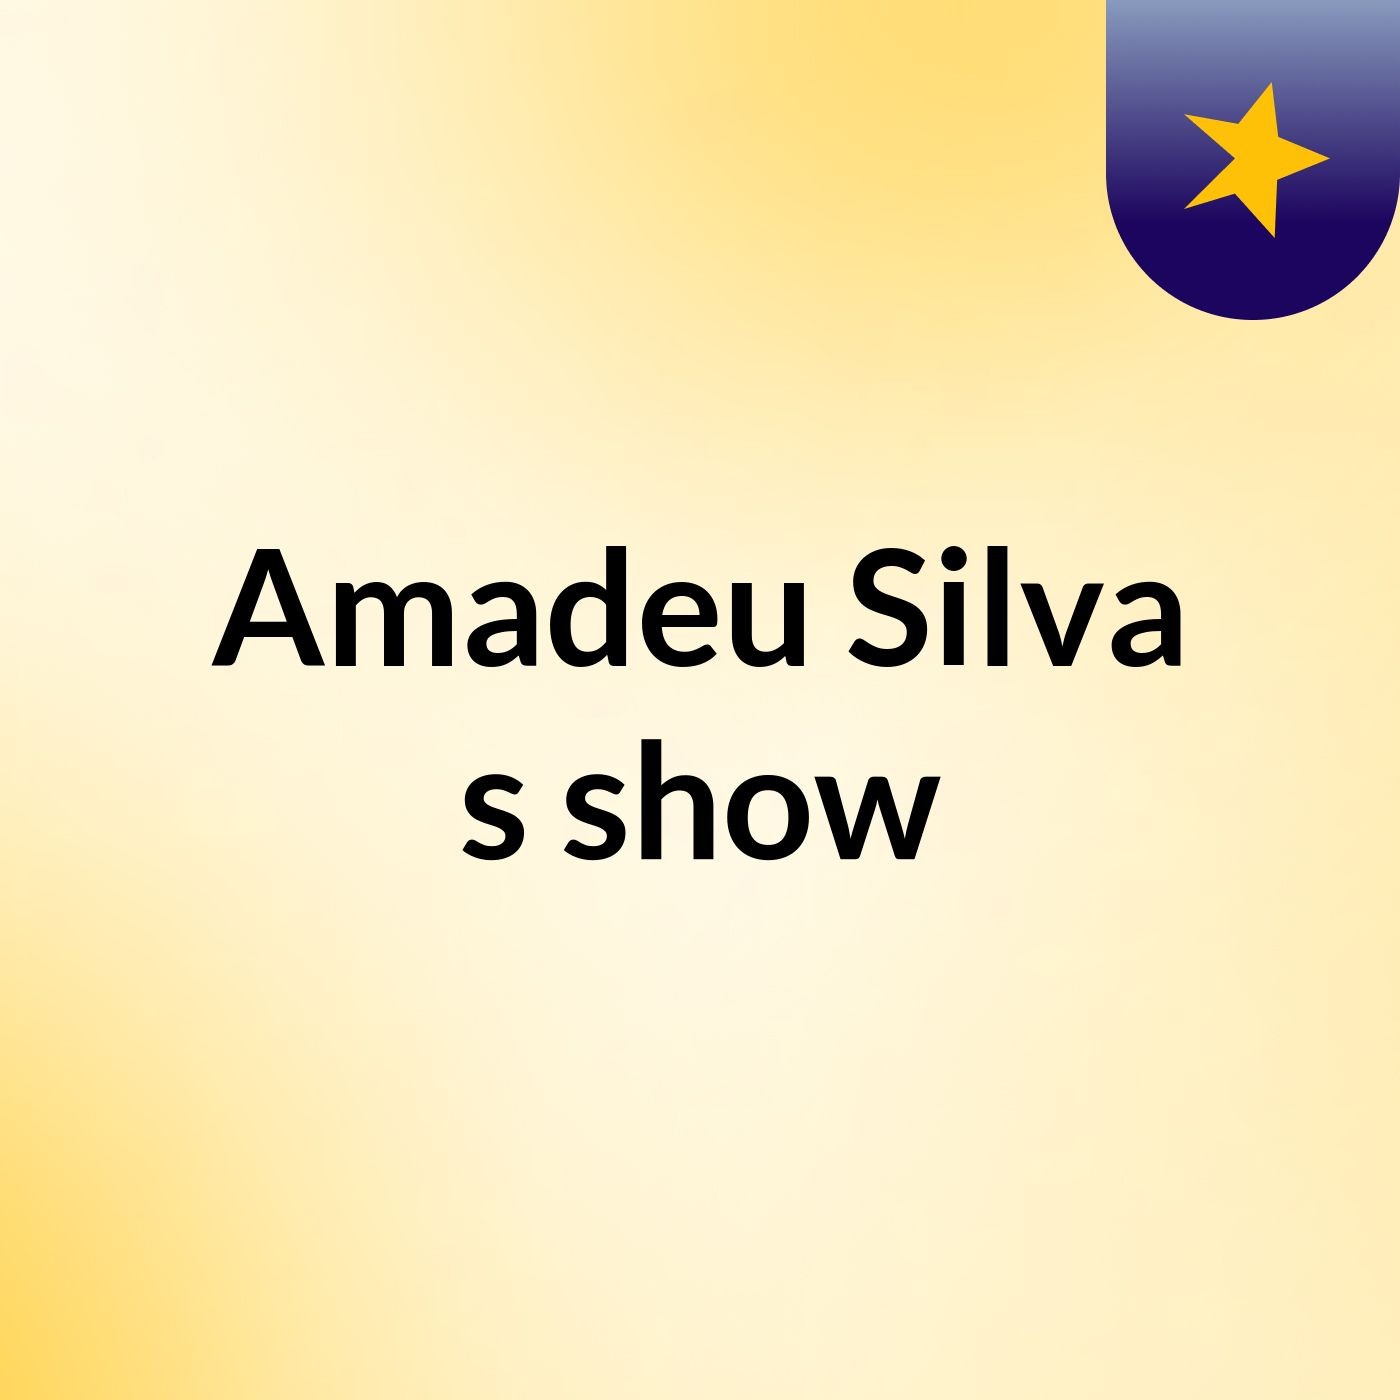 Amadeu Silva's show